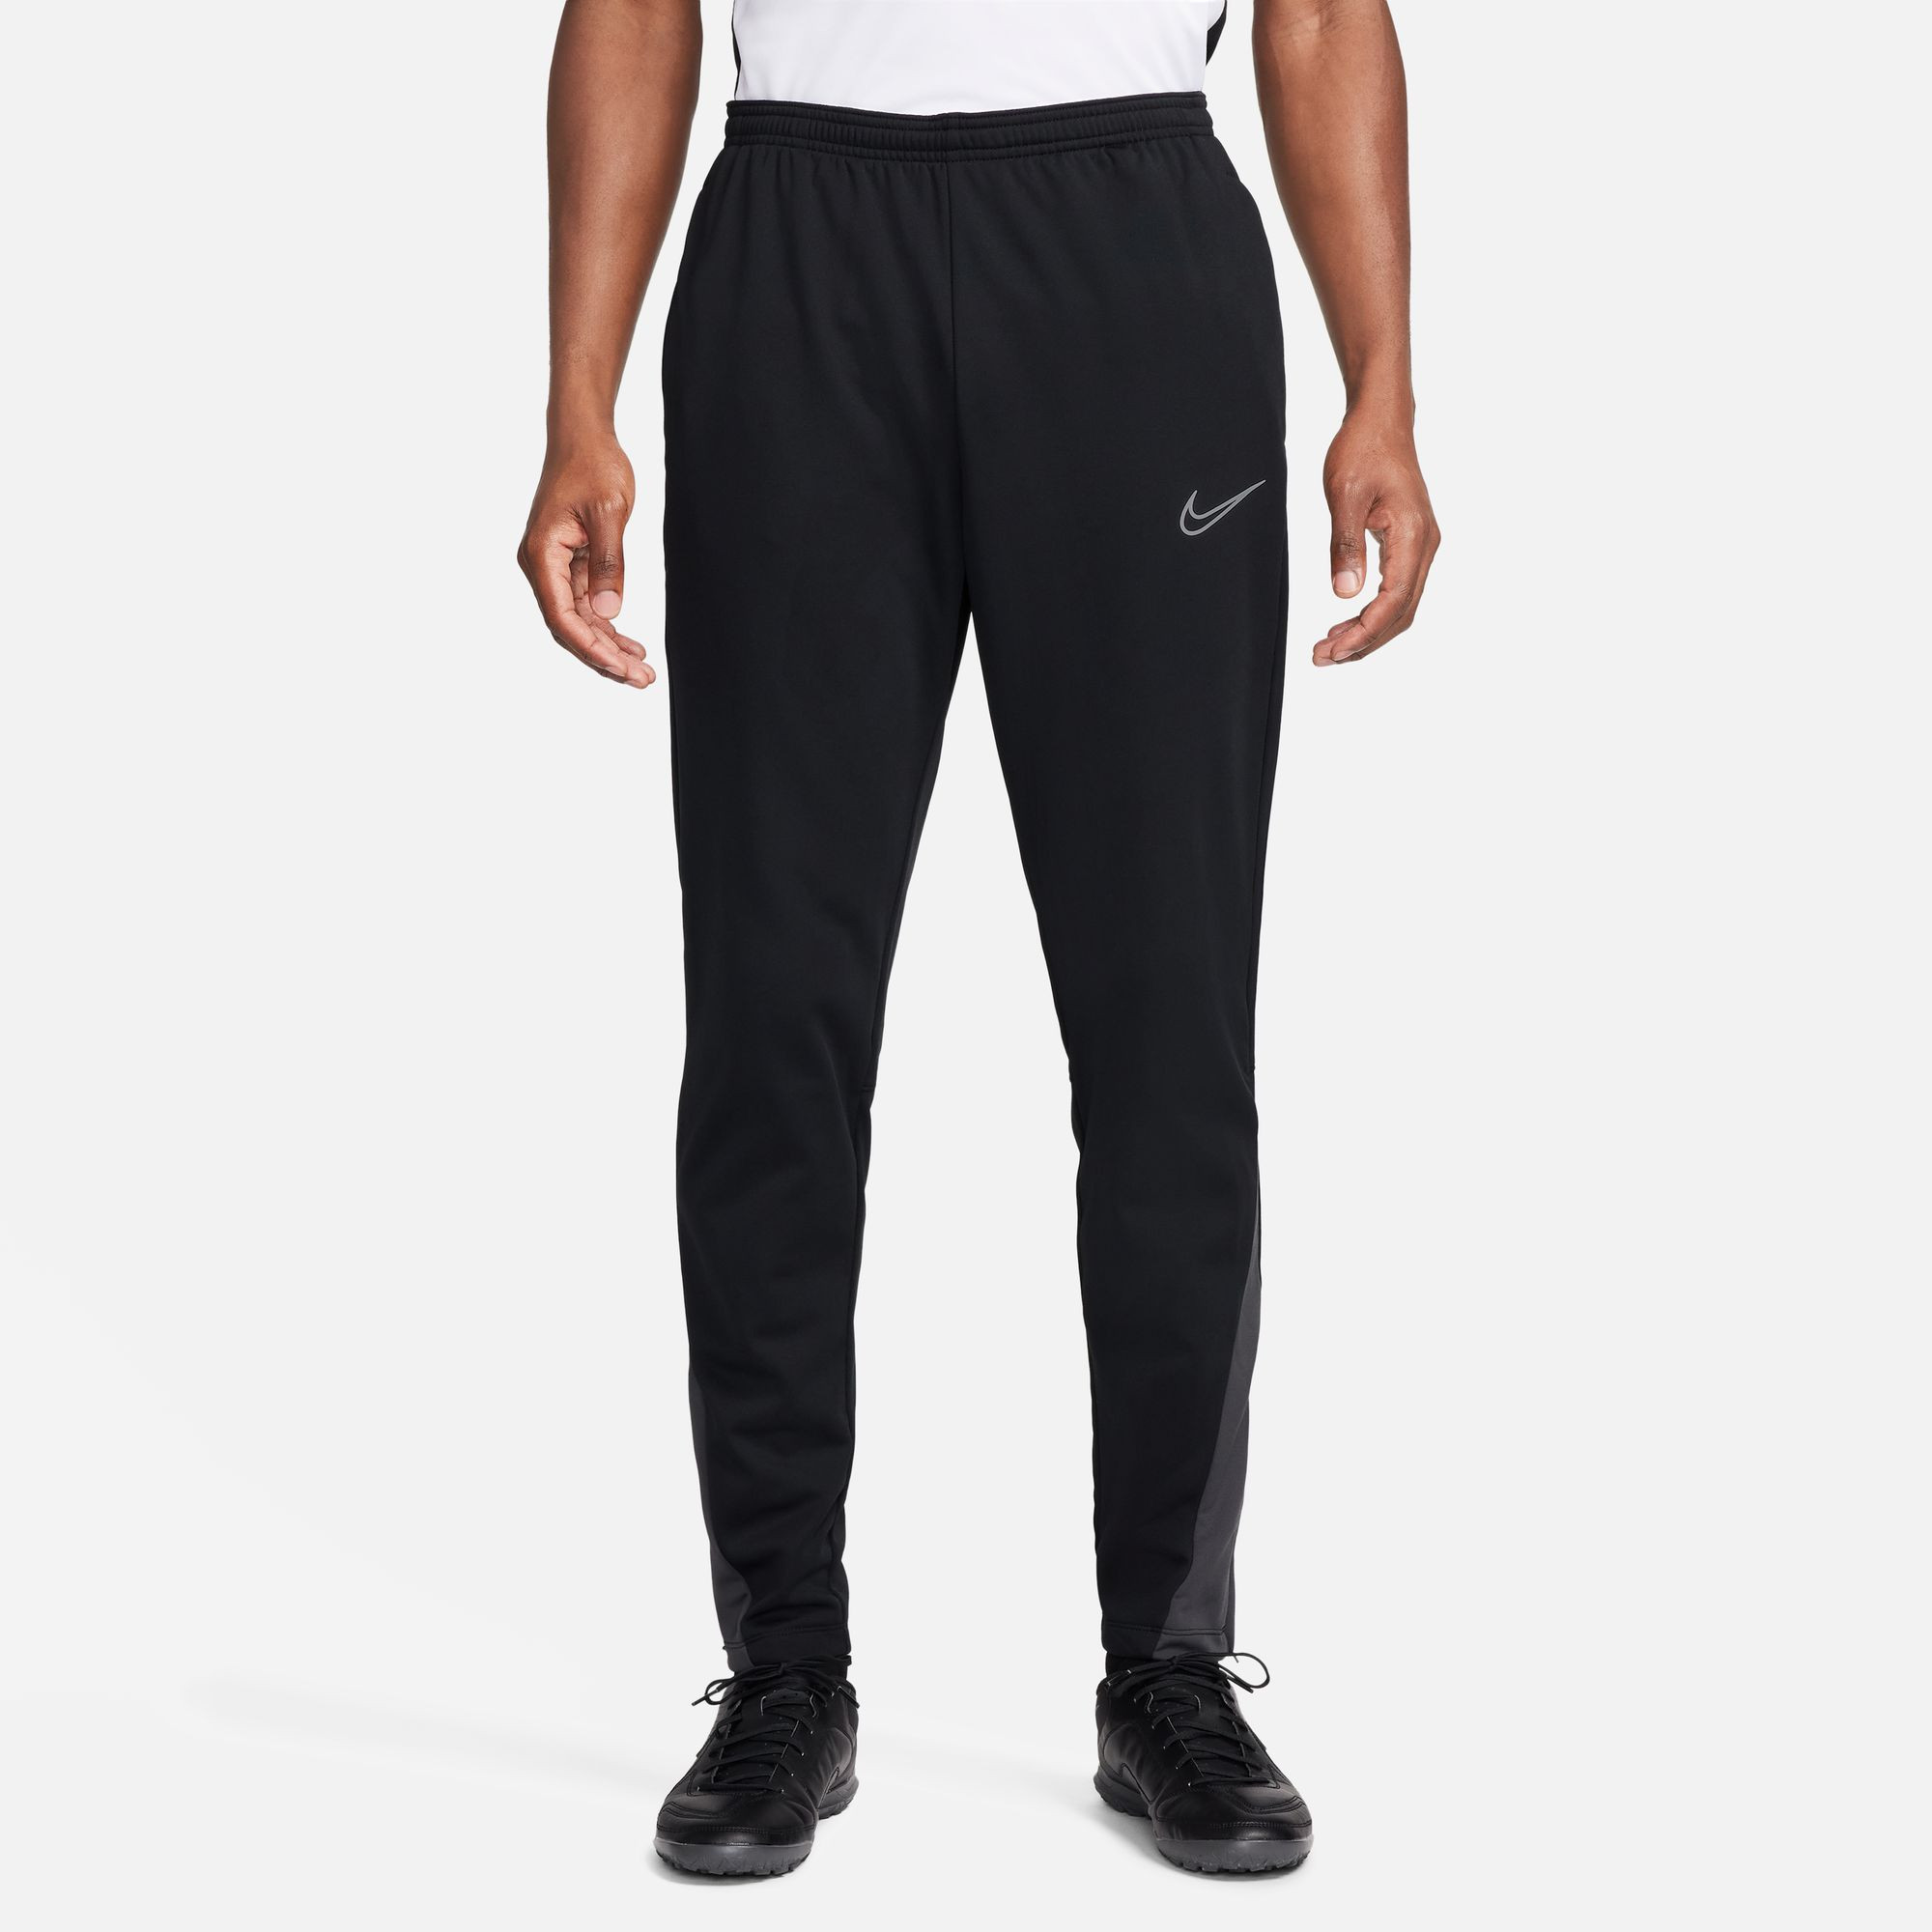 Pantalon de football Nike Academy Winter Warrior - Black/Anthracite/Reflective Silver